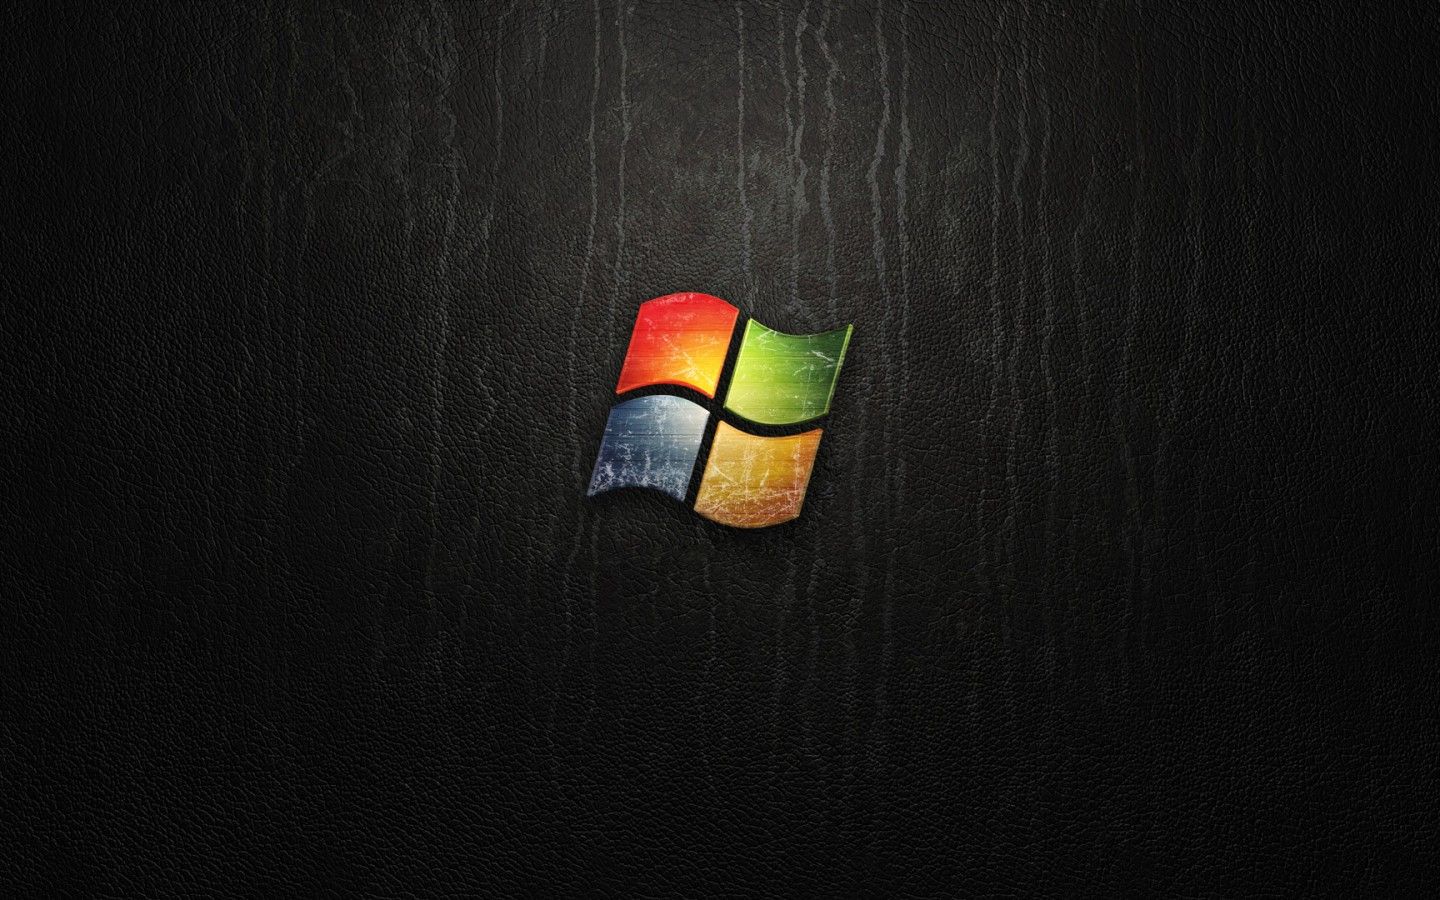 Black Windows 7 HD Wallpaper 1440x900